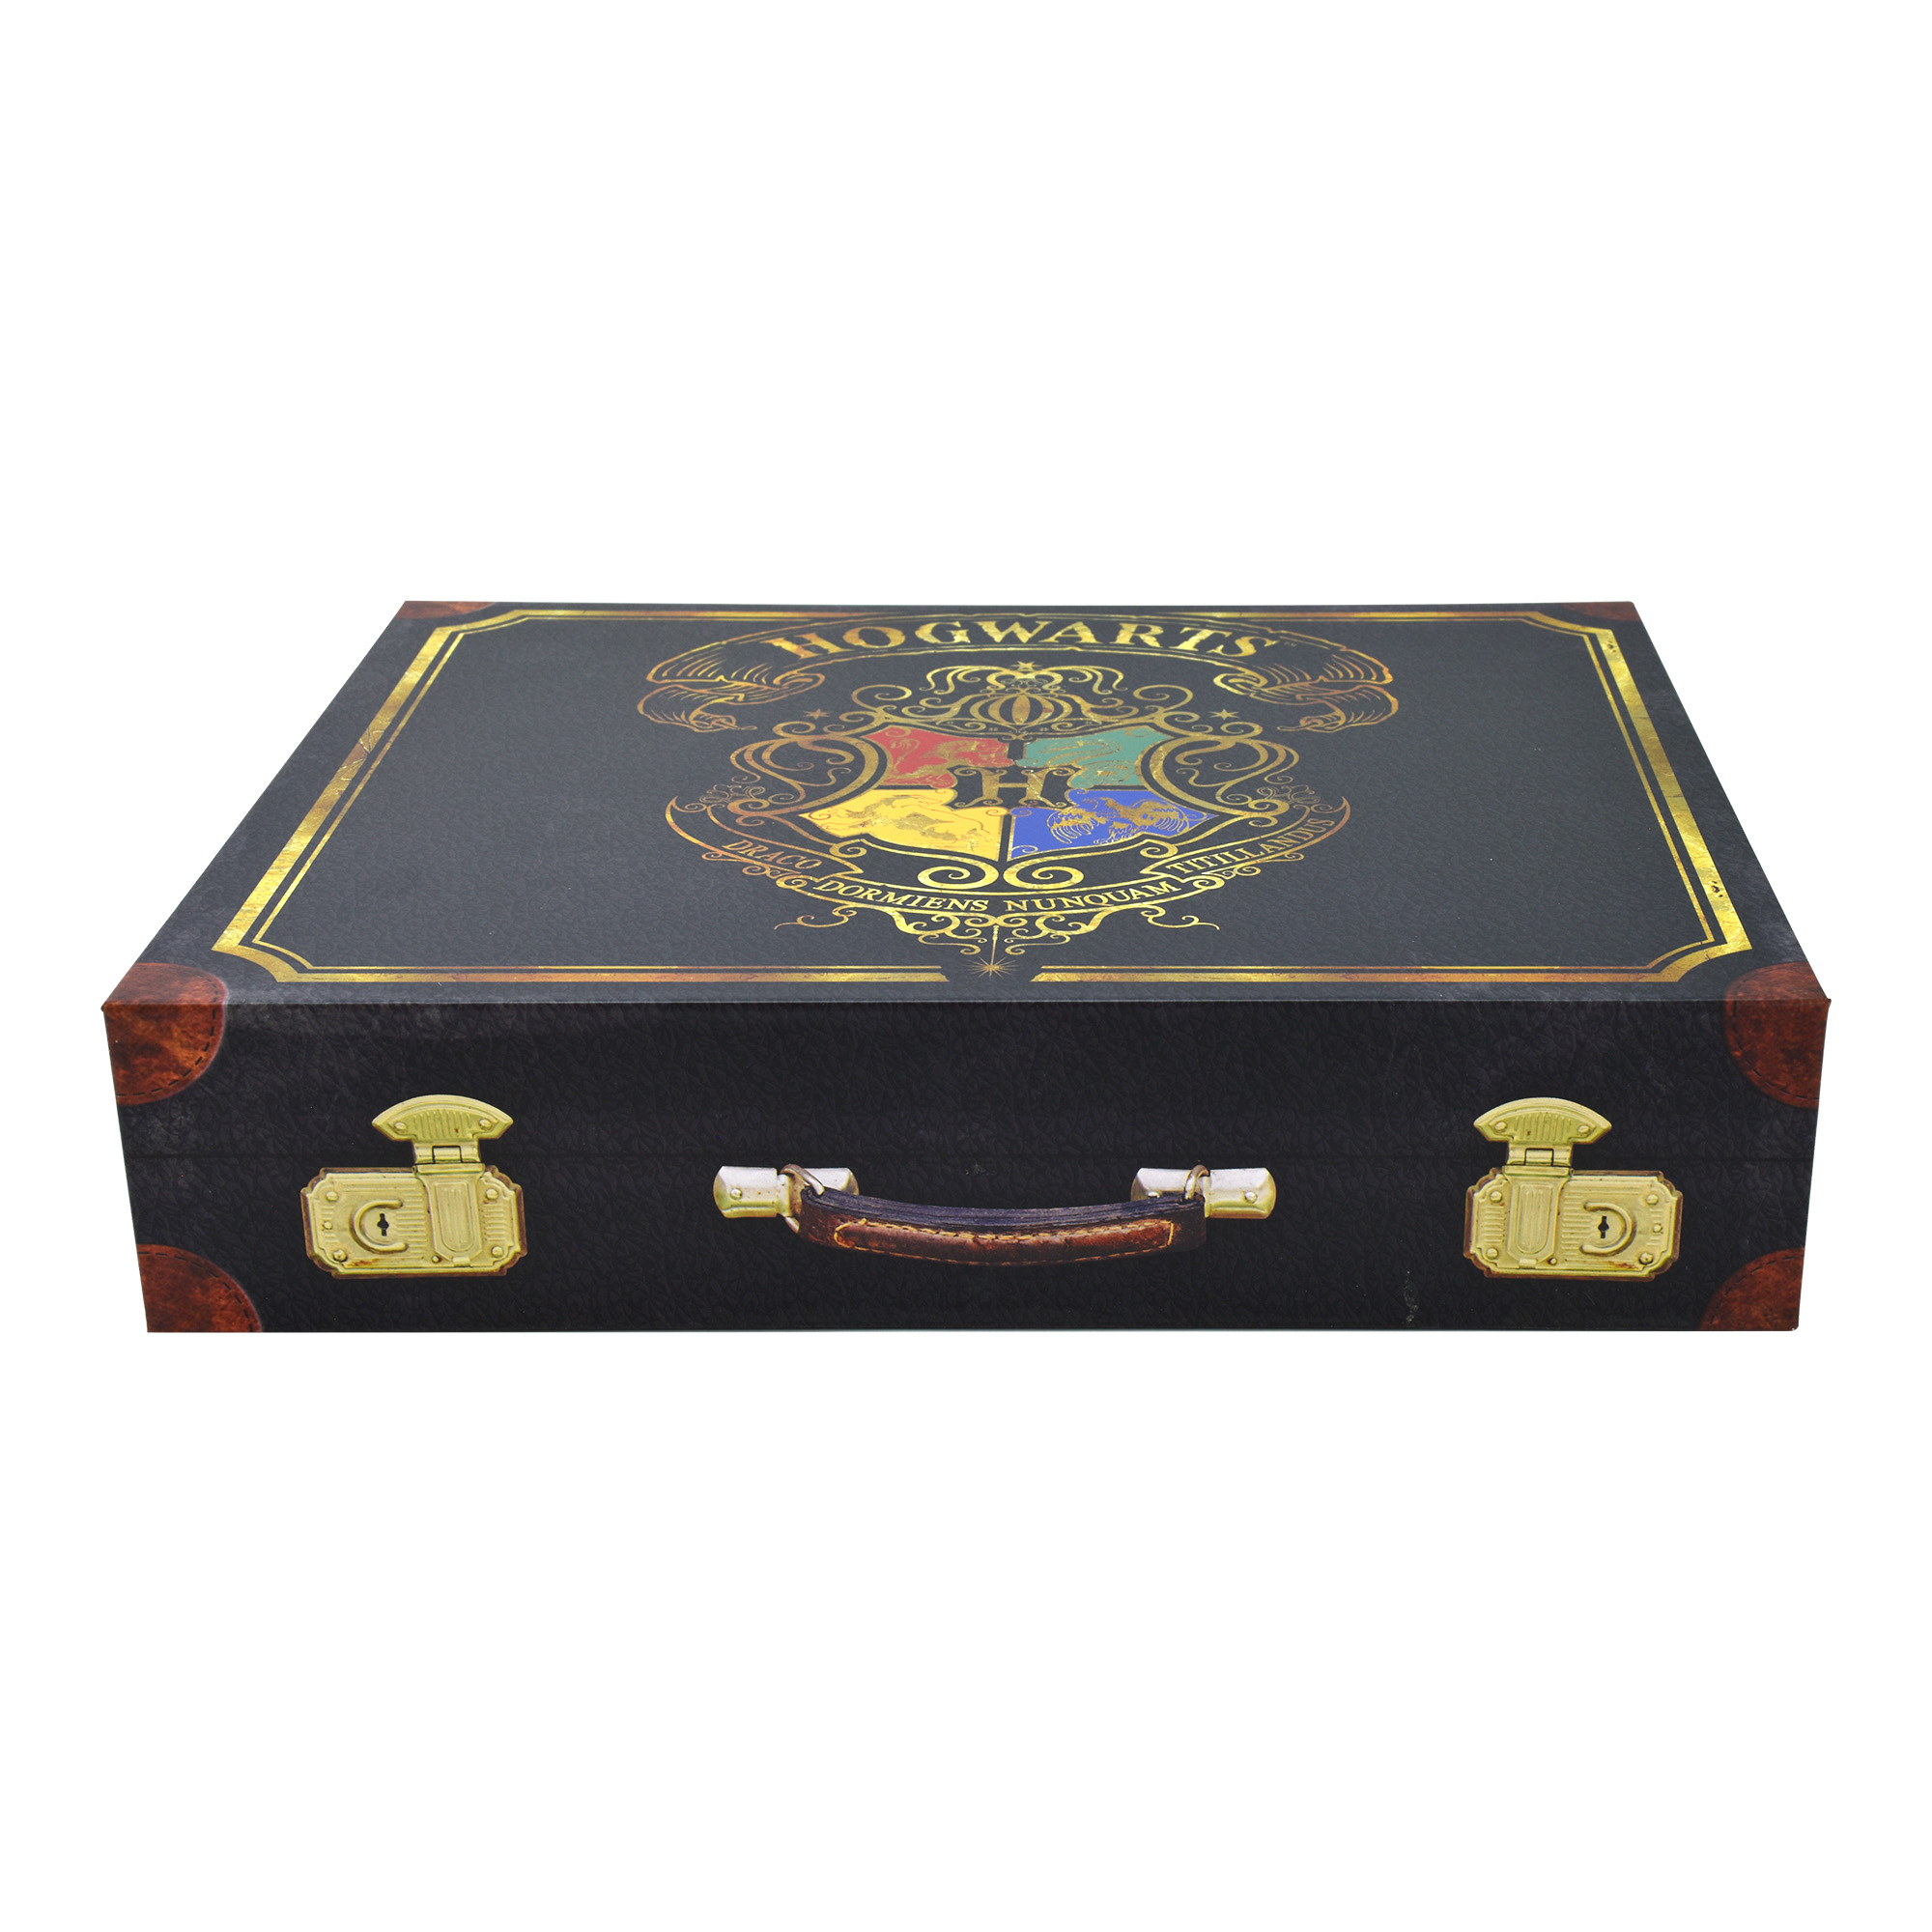 Harry Potter - Geschenkebox im Design des Hogwarts Koffer